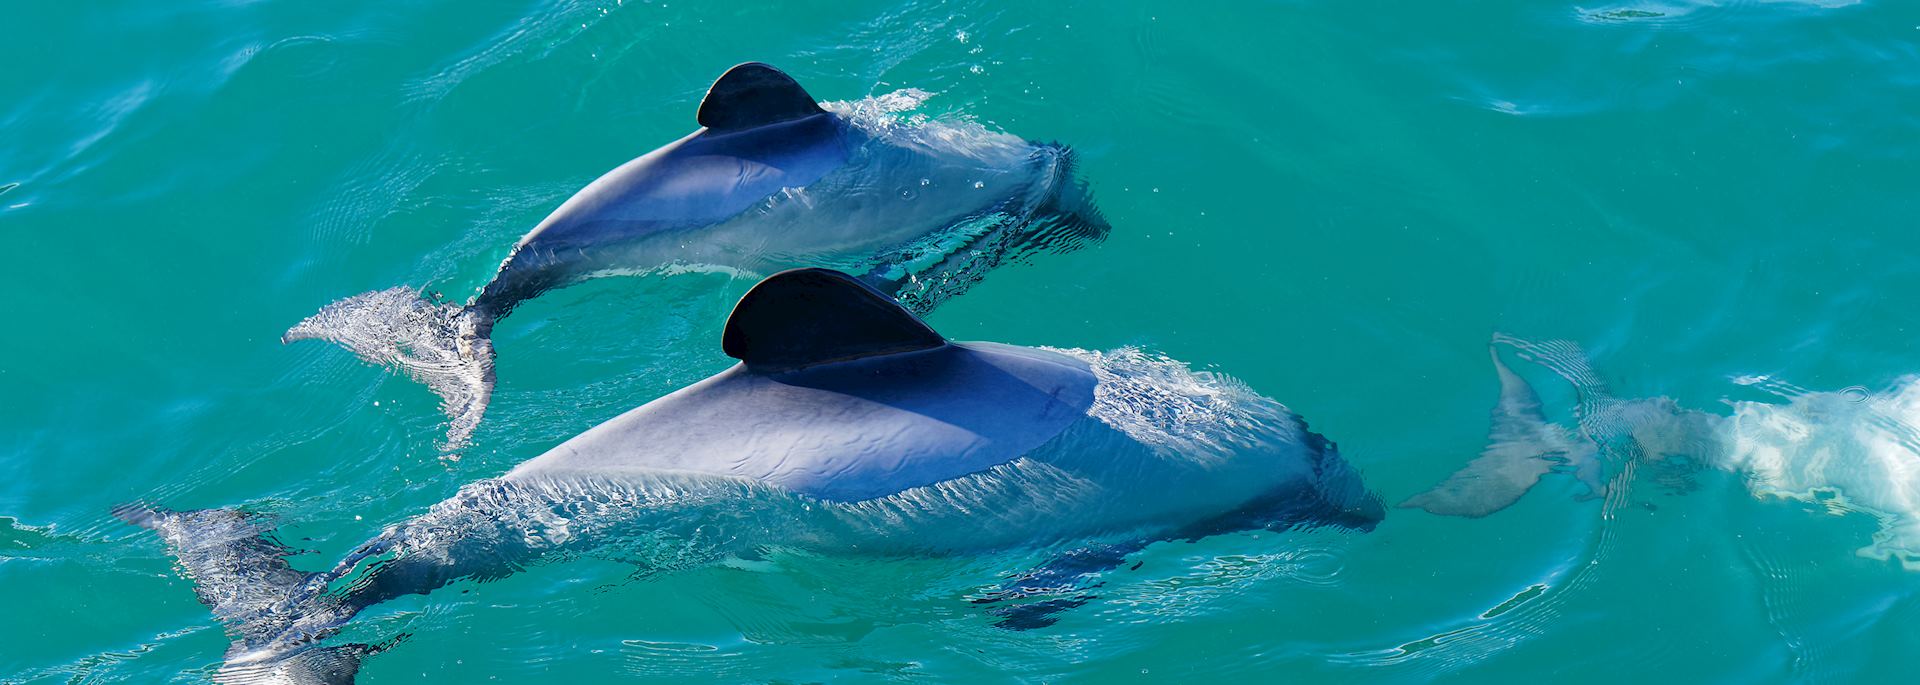 Hector's dolphins, Akaroa